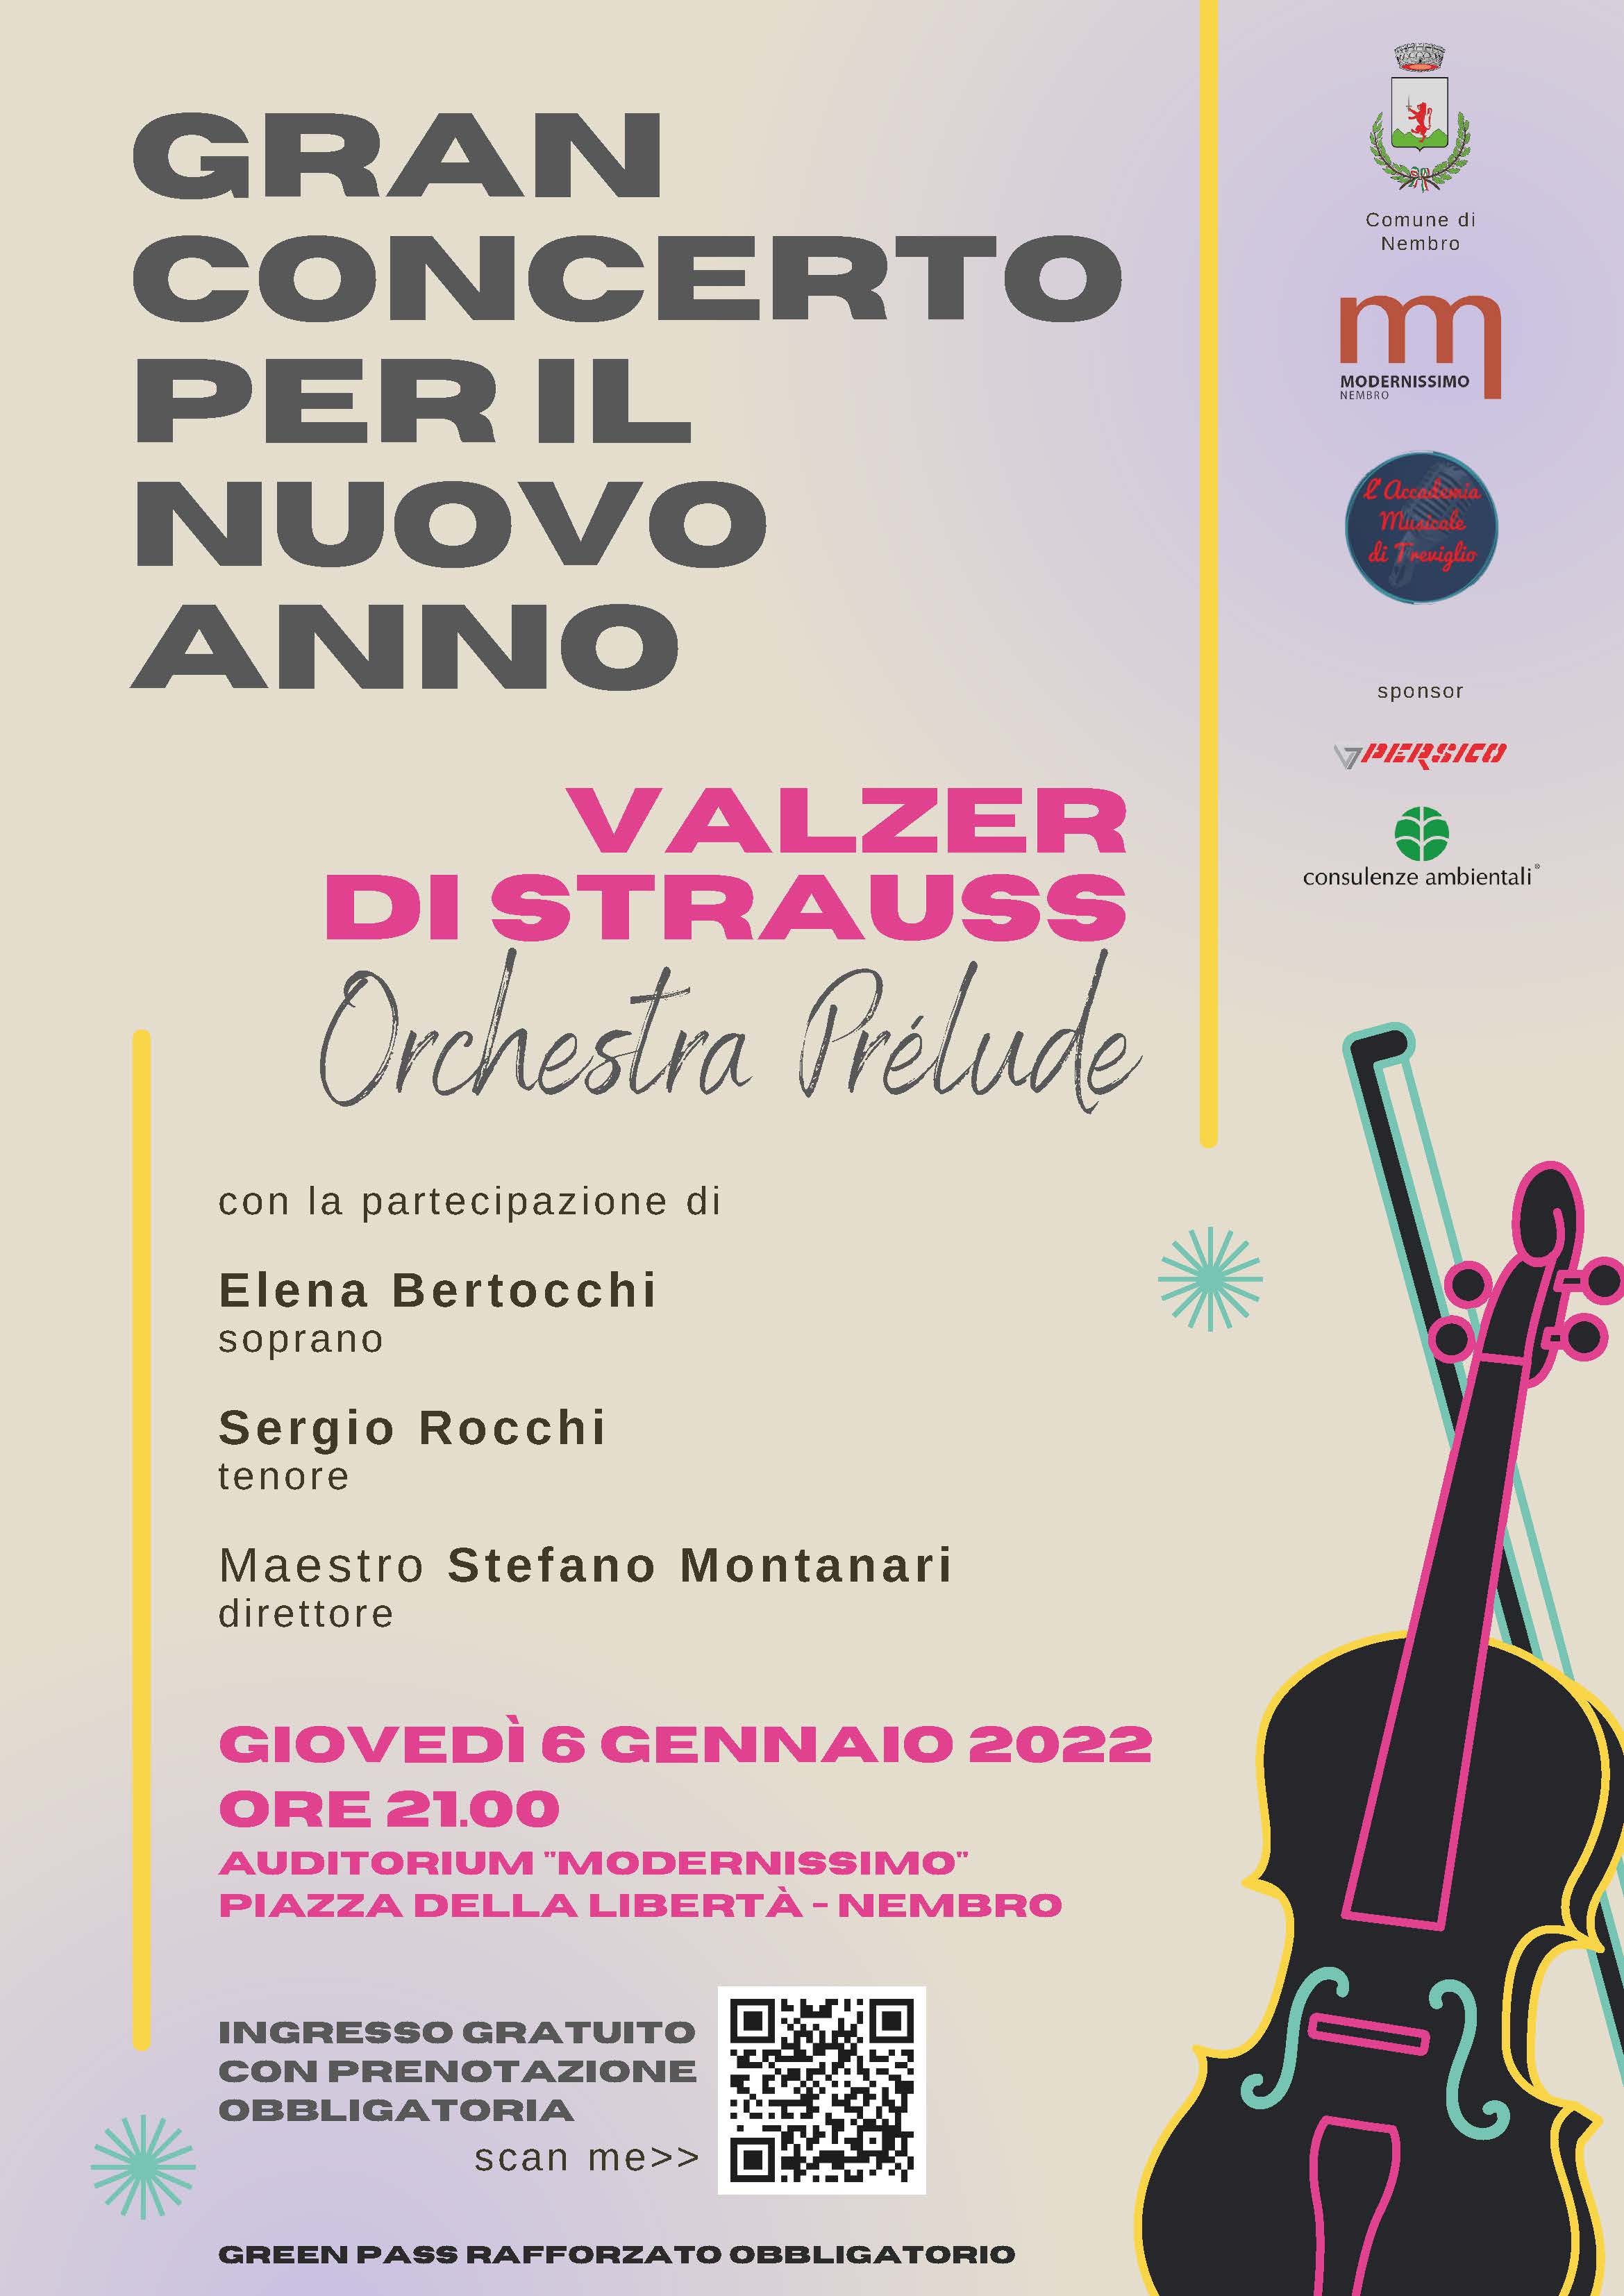 Immagine DIRETTA STREAMING del Gran Concerto per il Nuovo Anno. VALZER DI STRAUSS con l'Orchestra Prélude.